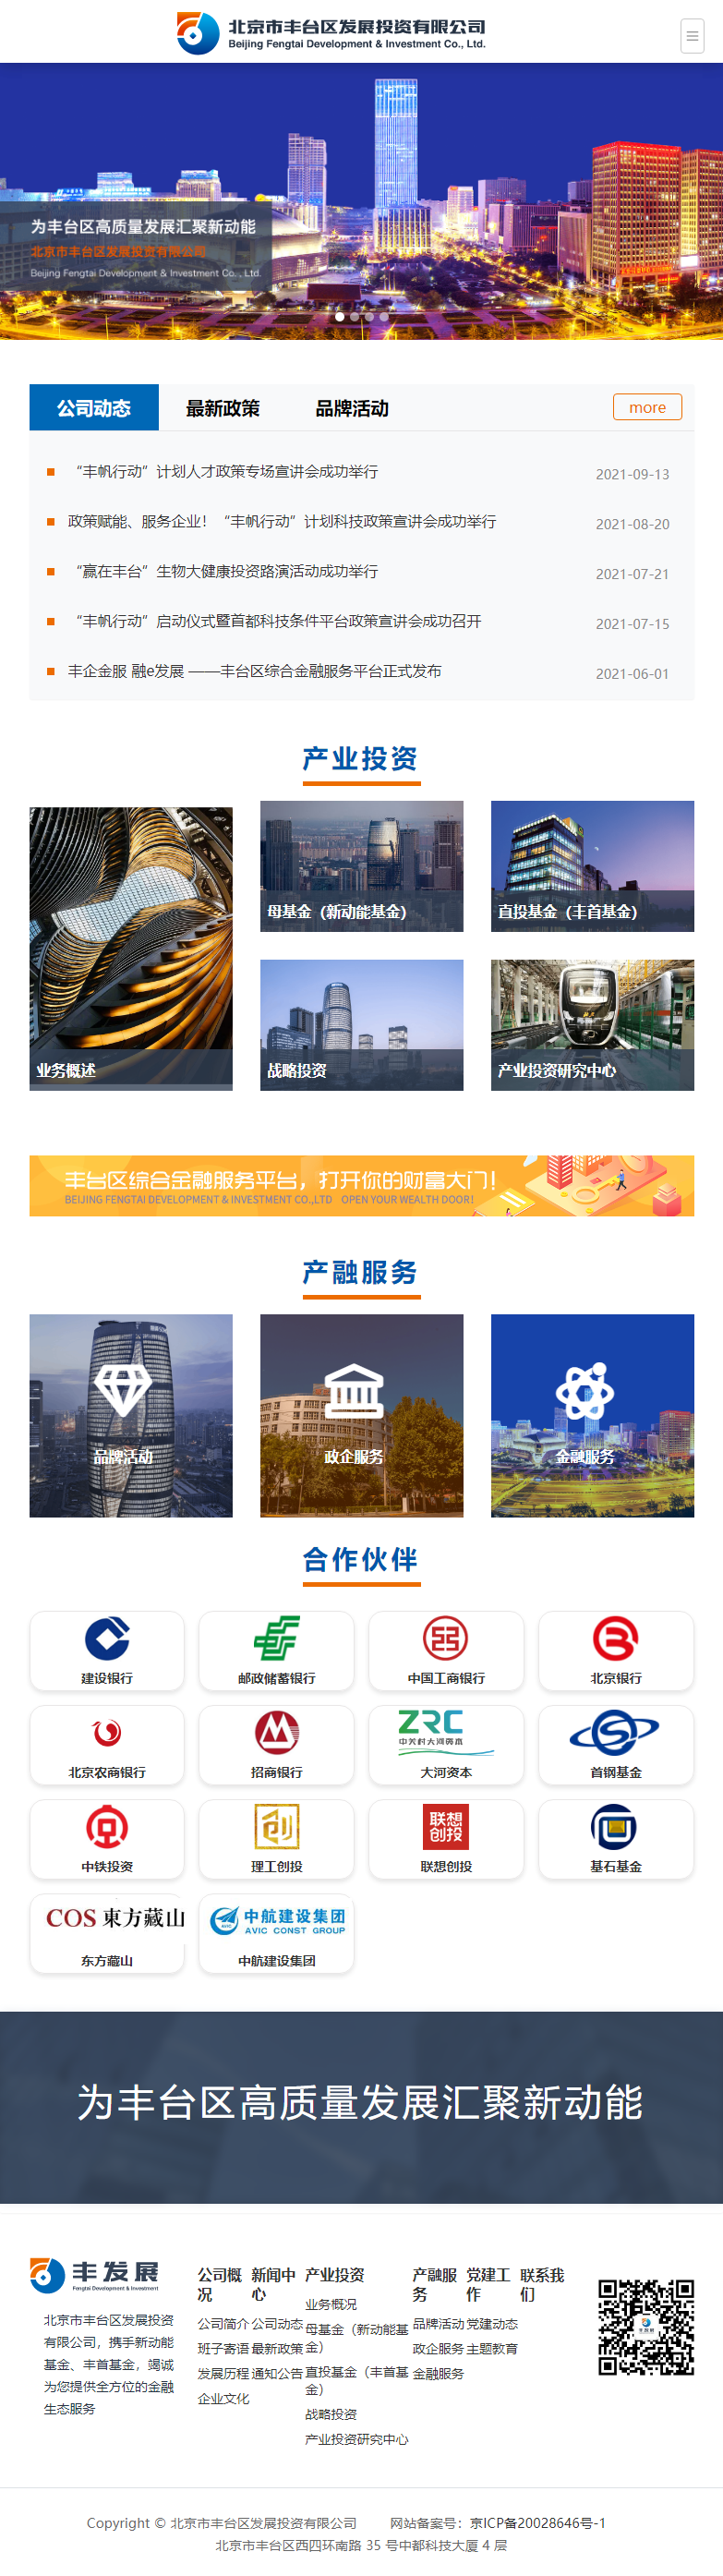 北京市丰台区发展投资有限公司网站案例